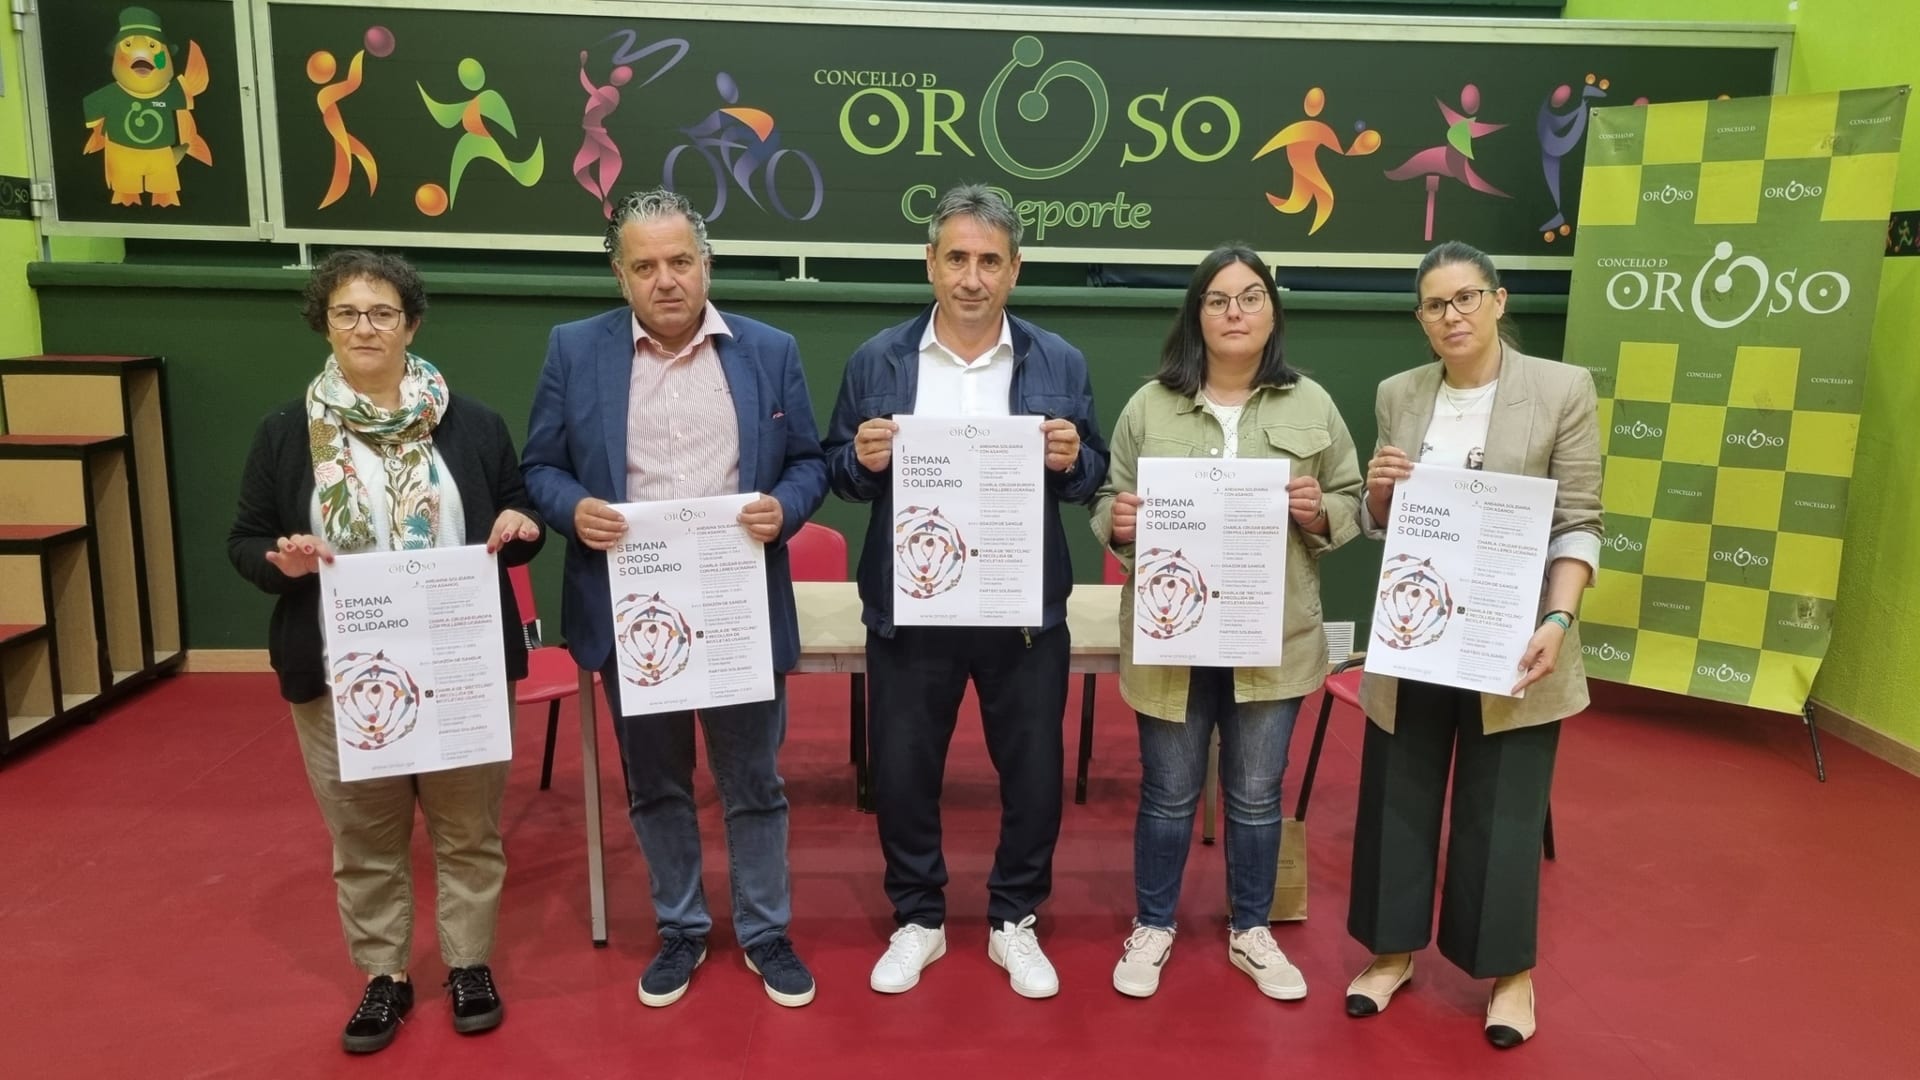 La presentación de la I Semana Oroso Solidario | CONCELLO DE OROSO